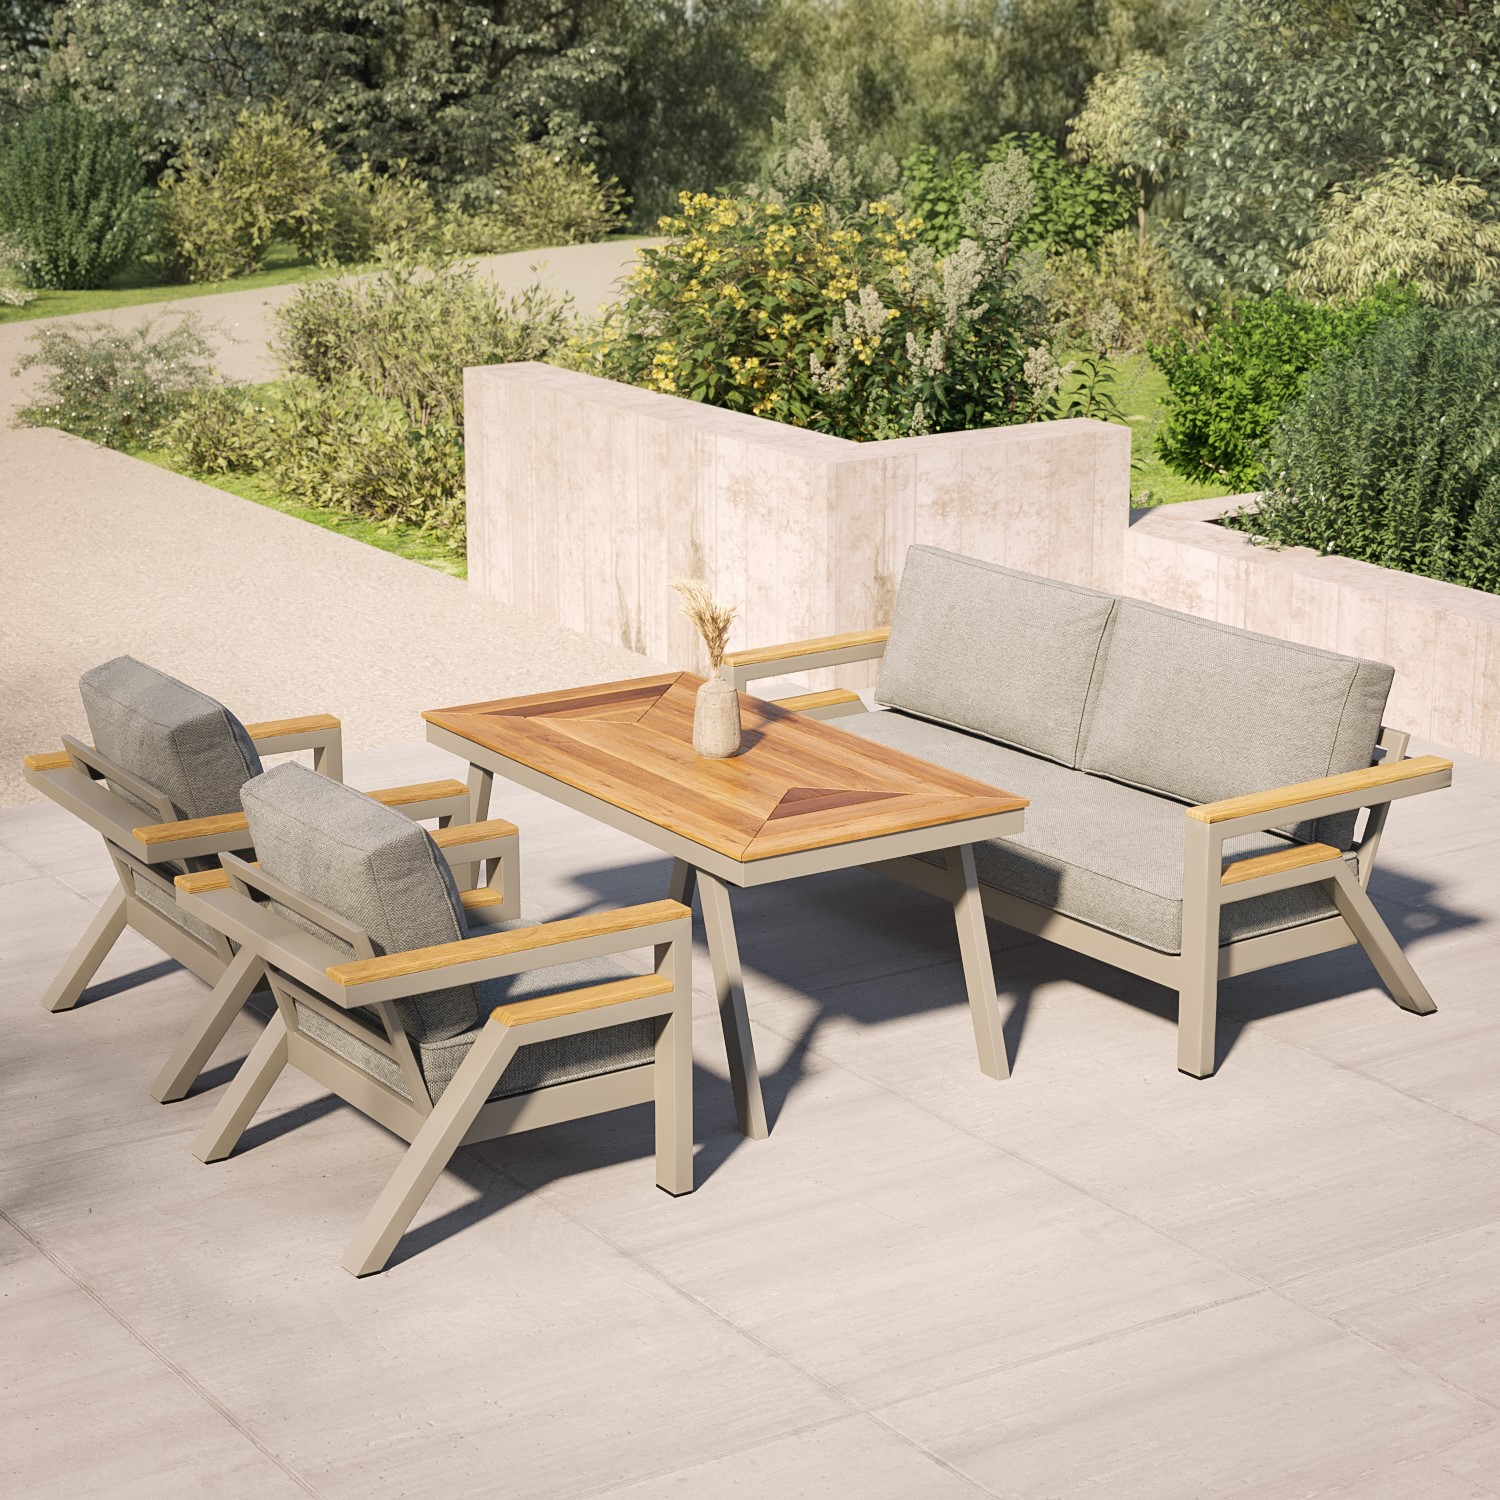 Read more about 6 seater iroko wood & aluminium garden sofa set como